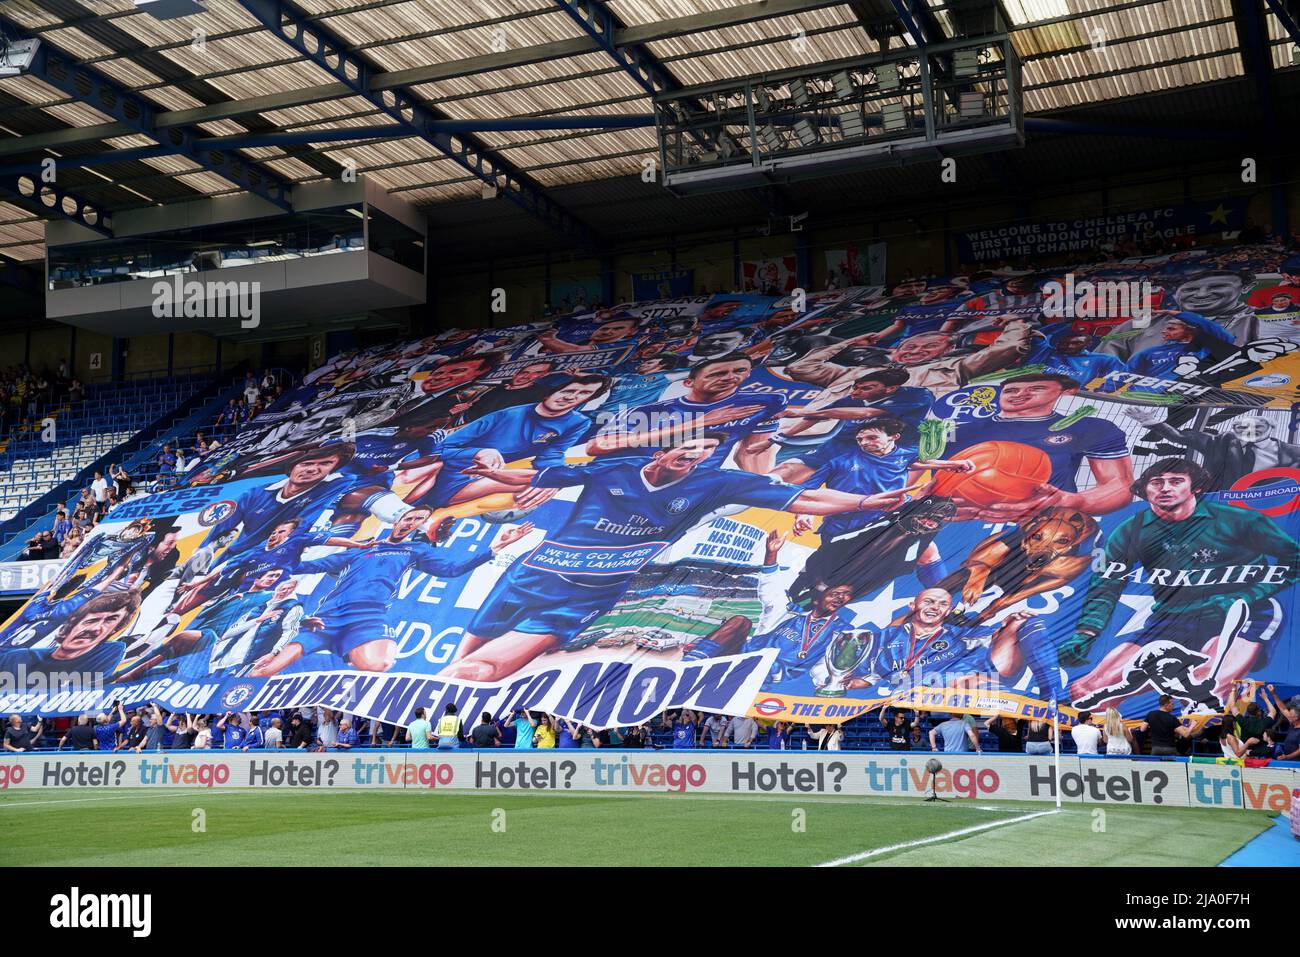 Une vue générale d'une bannière Chelsea dans les stands lors du match de la Premier League à Stamford Bridge, Londres. Date de la photo: Dimanche 22 mai 2022. Banque D'Images